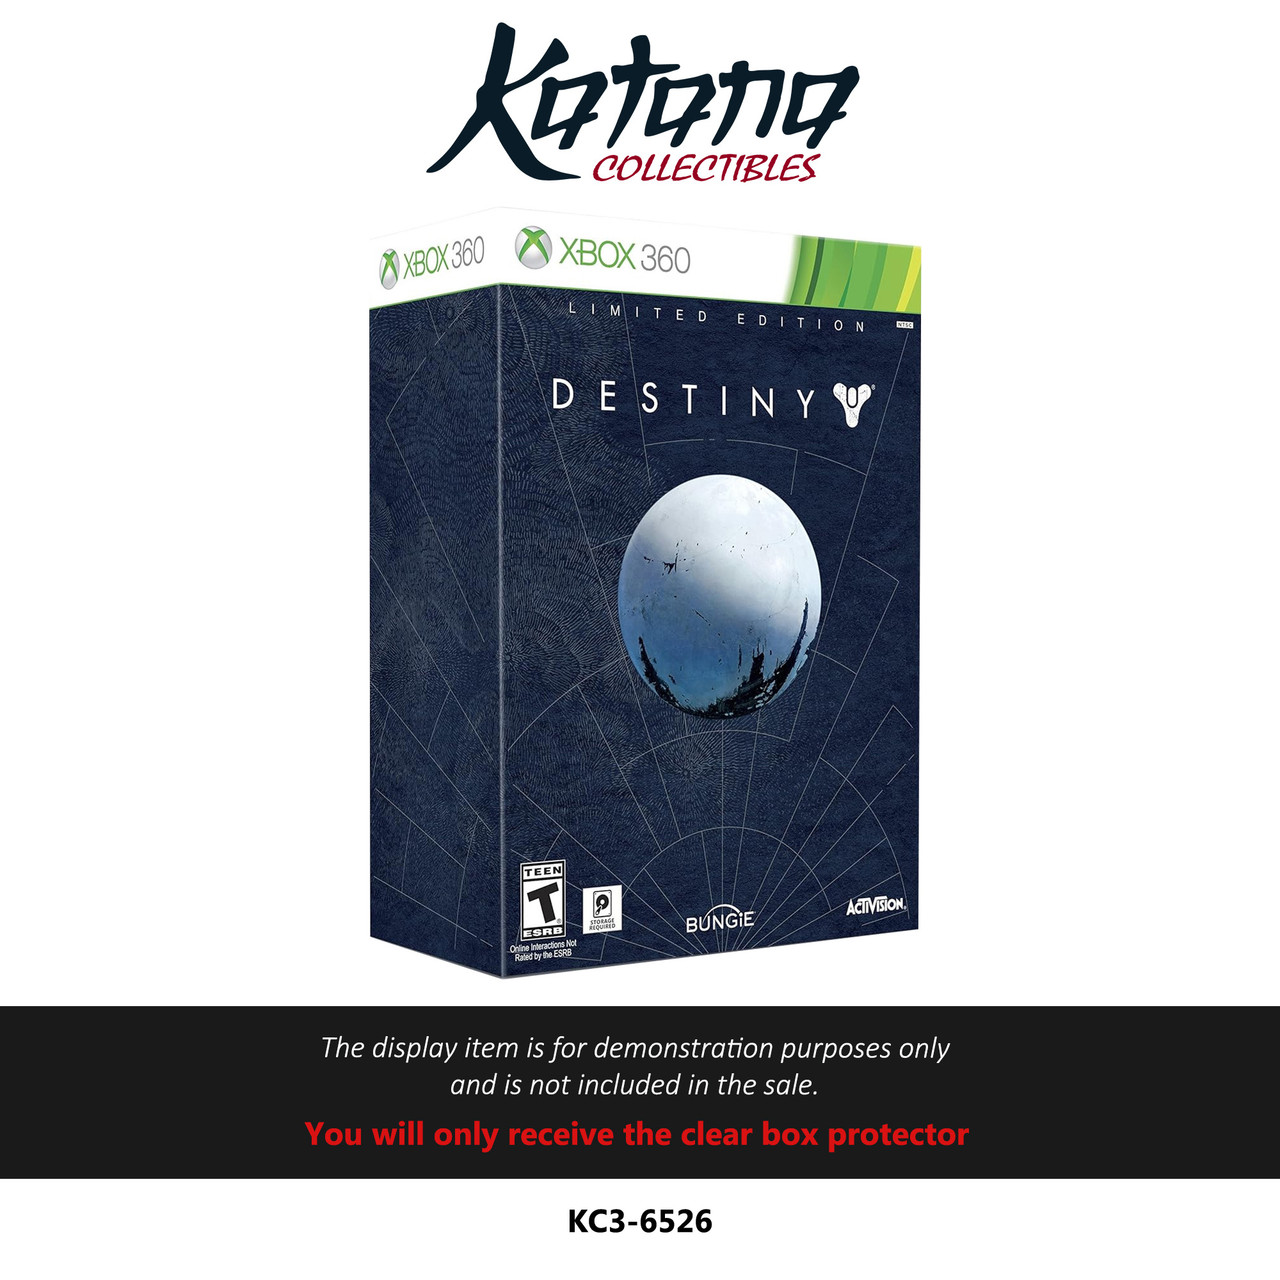 Katana Collectibles Protector For Destiny 1 Collectors Edition - Xbox 360